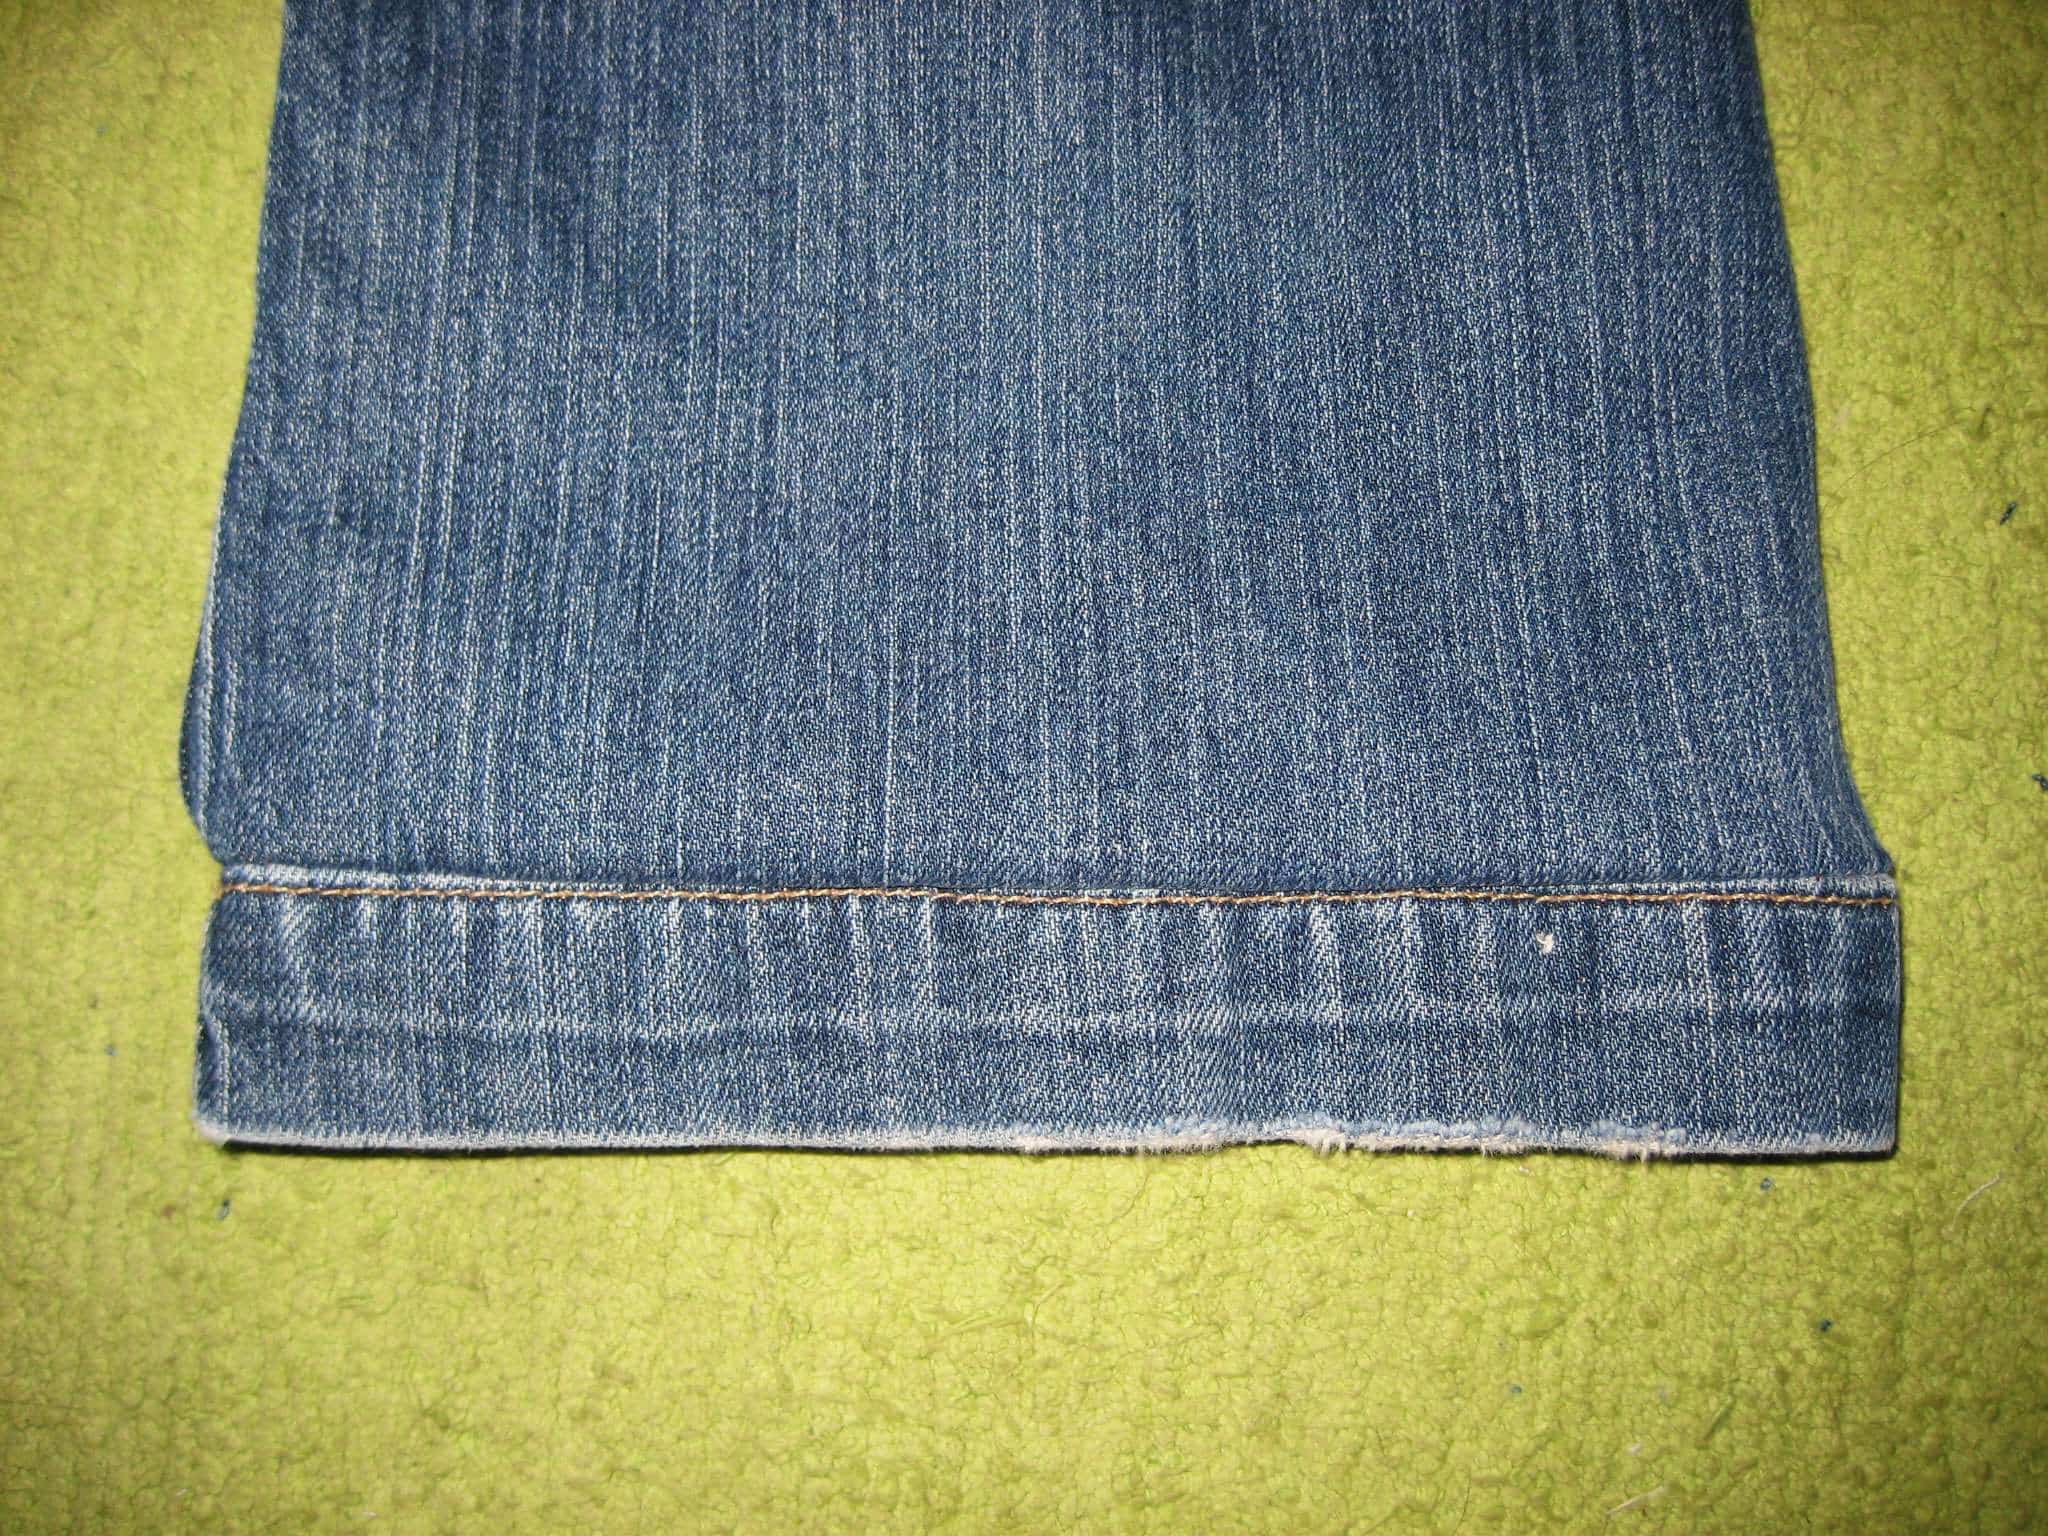 How to Hem Jeans Using the Original Hem - Home-Ec 101